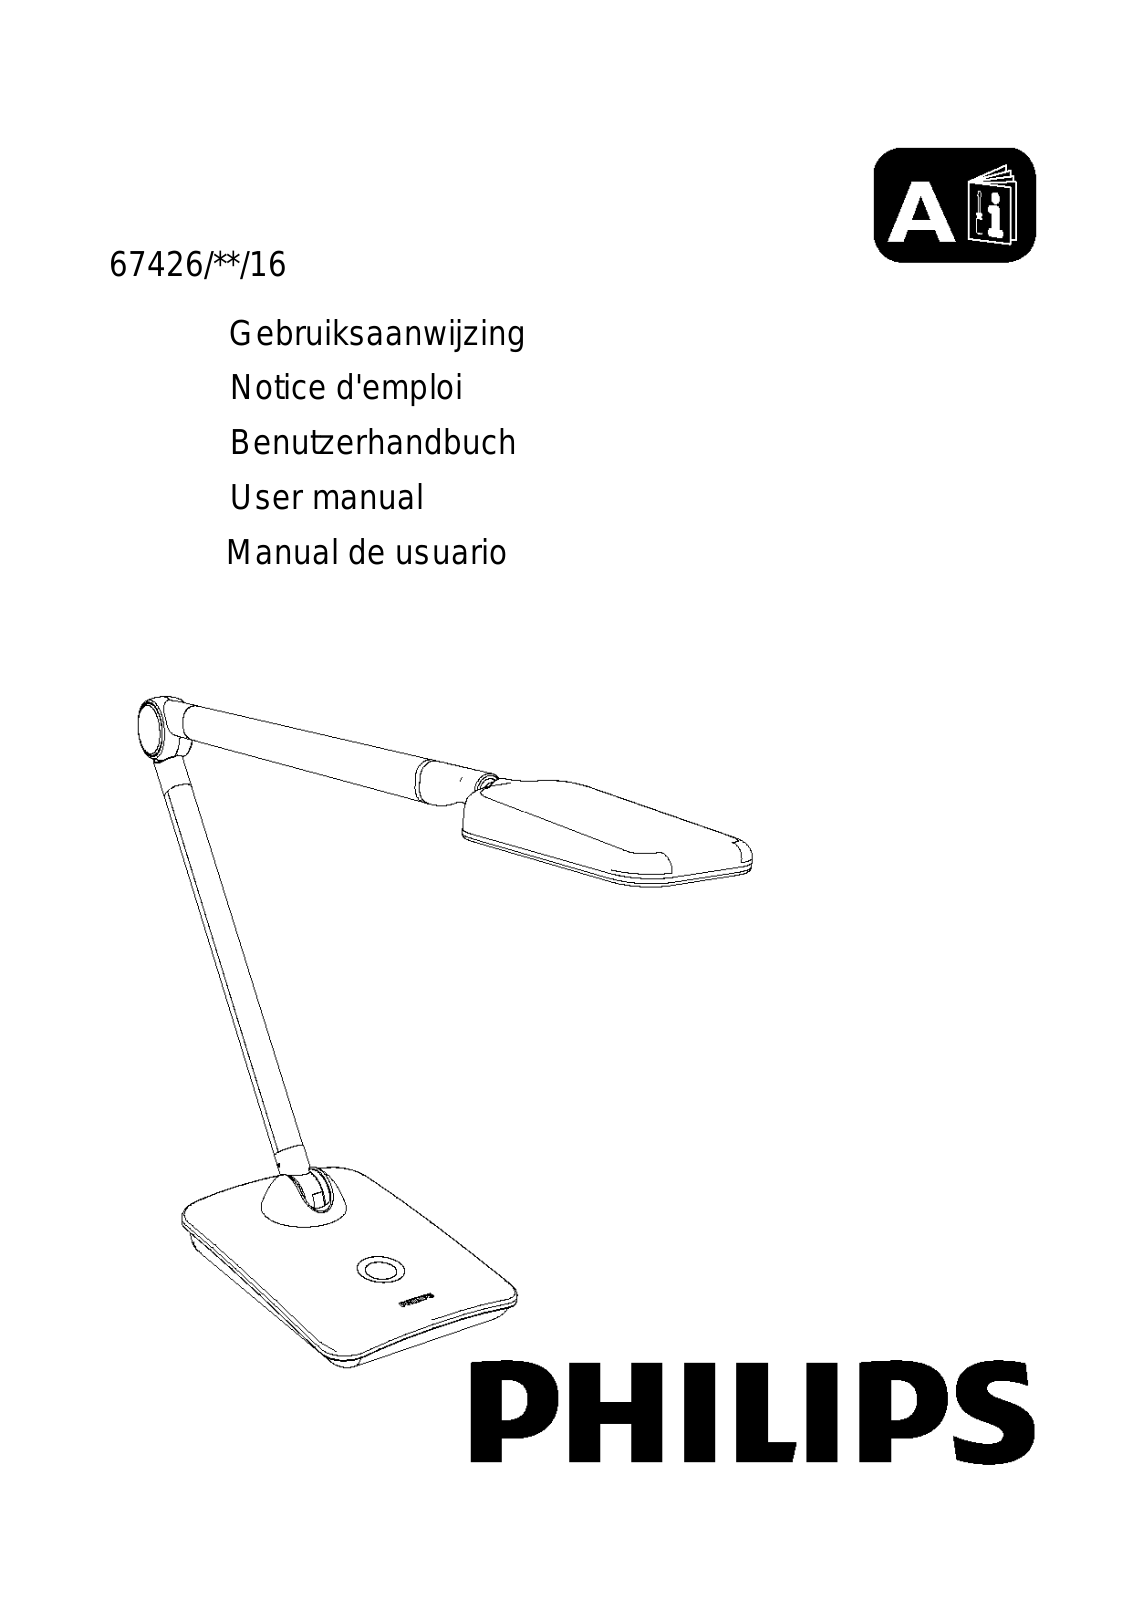 Philips Eyecare Tischleuchte User Manual